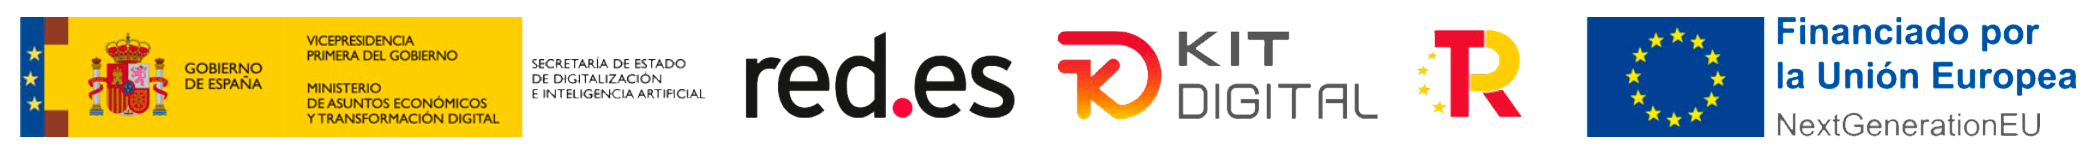 logo KIT DIGITAL